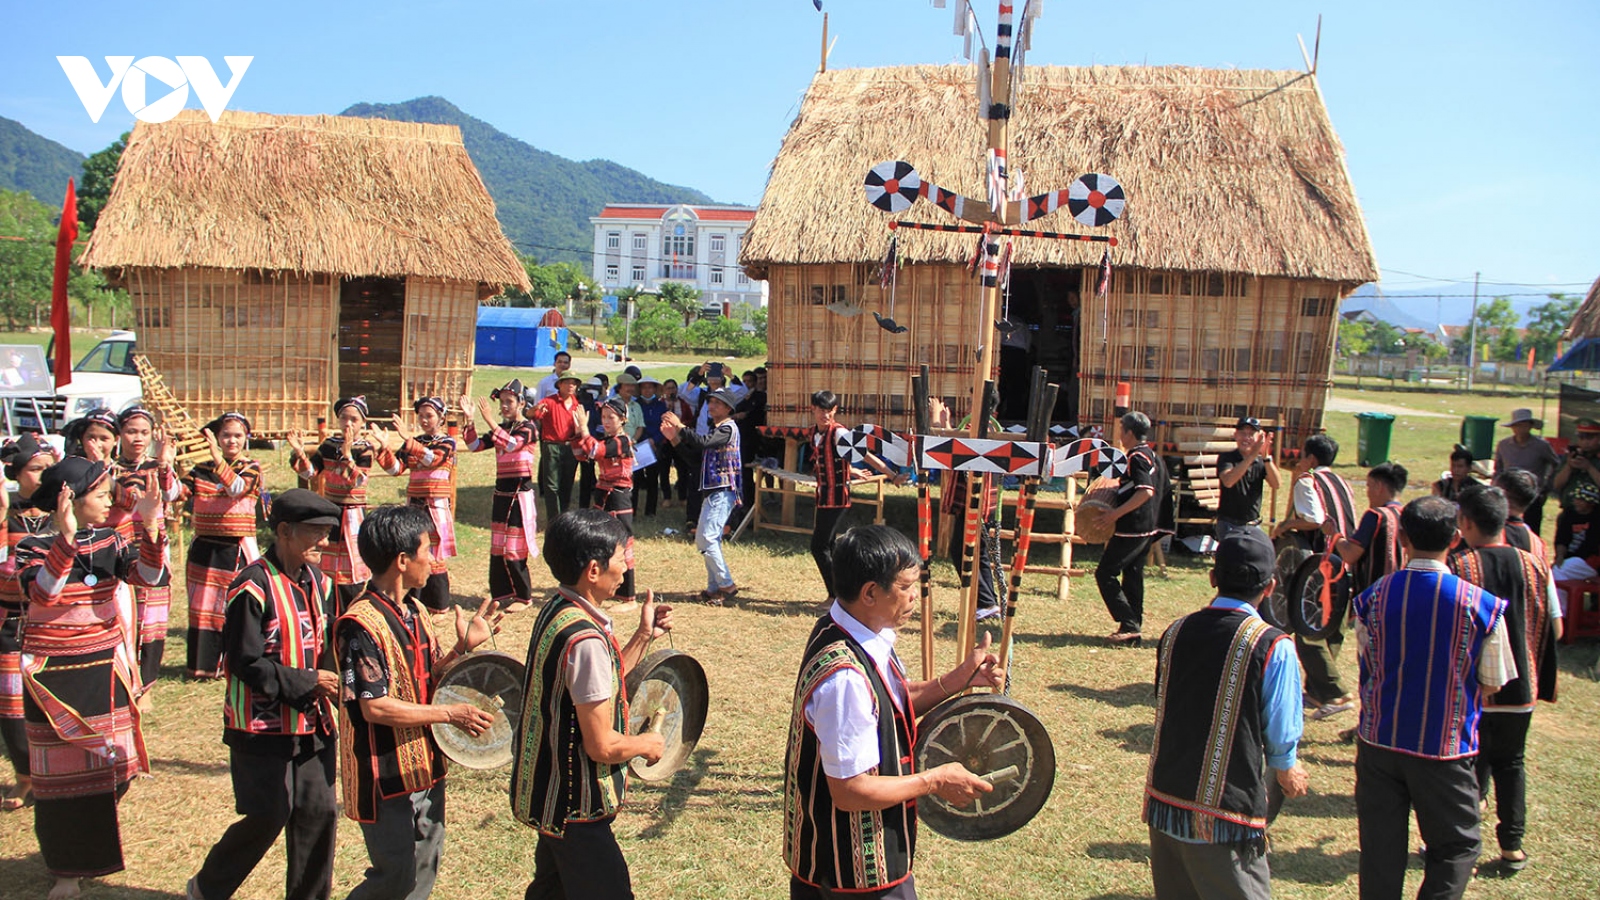 Đồng bào các dân tộc thiểu số ở Bình Định bảo tồn văn hóa cồng chiêng